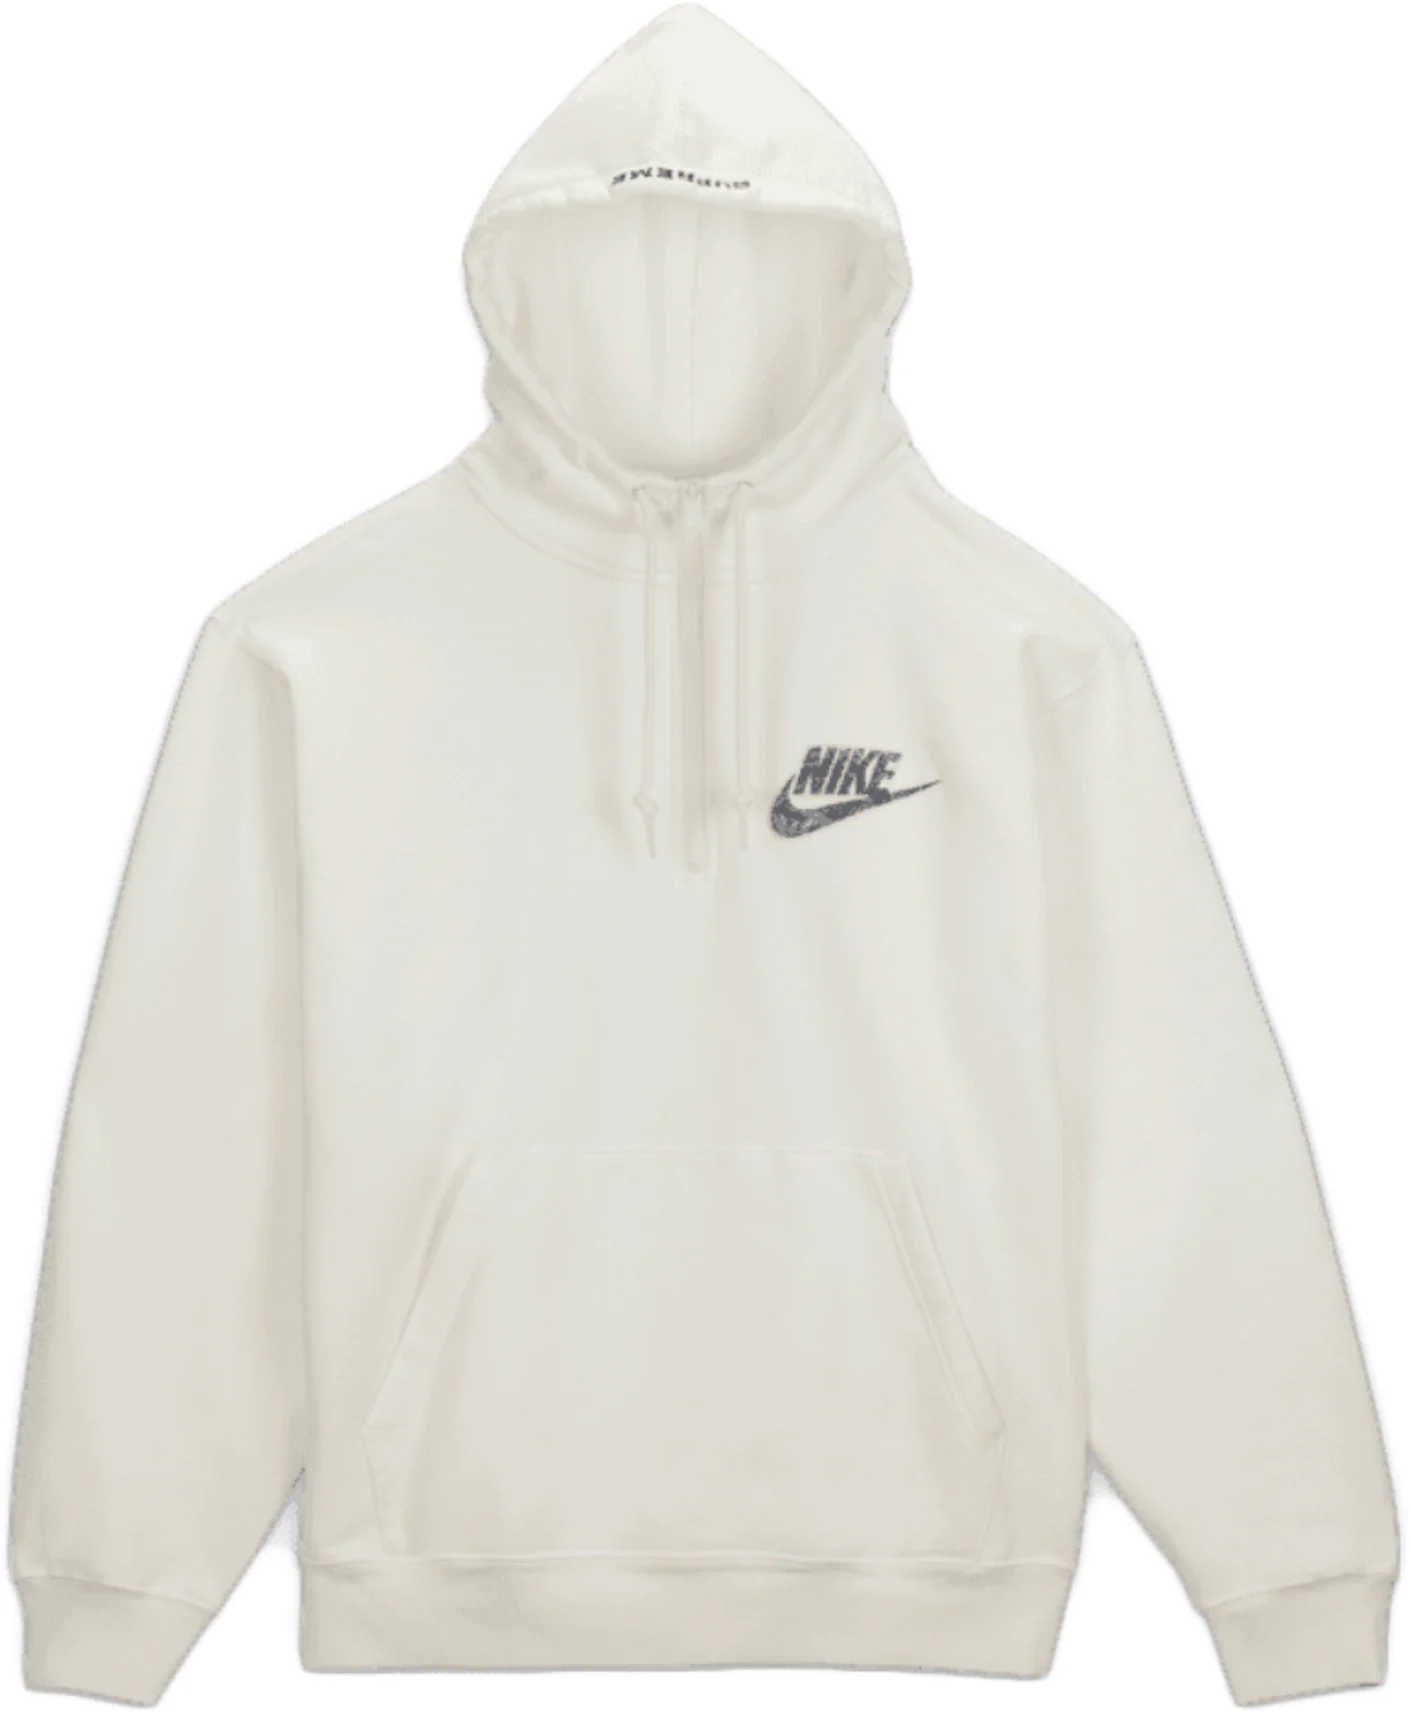 Supreme®/Nike® Half Zip HoodedSweatshirt